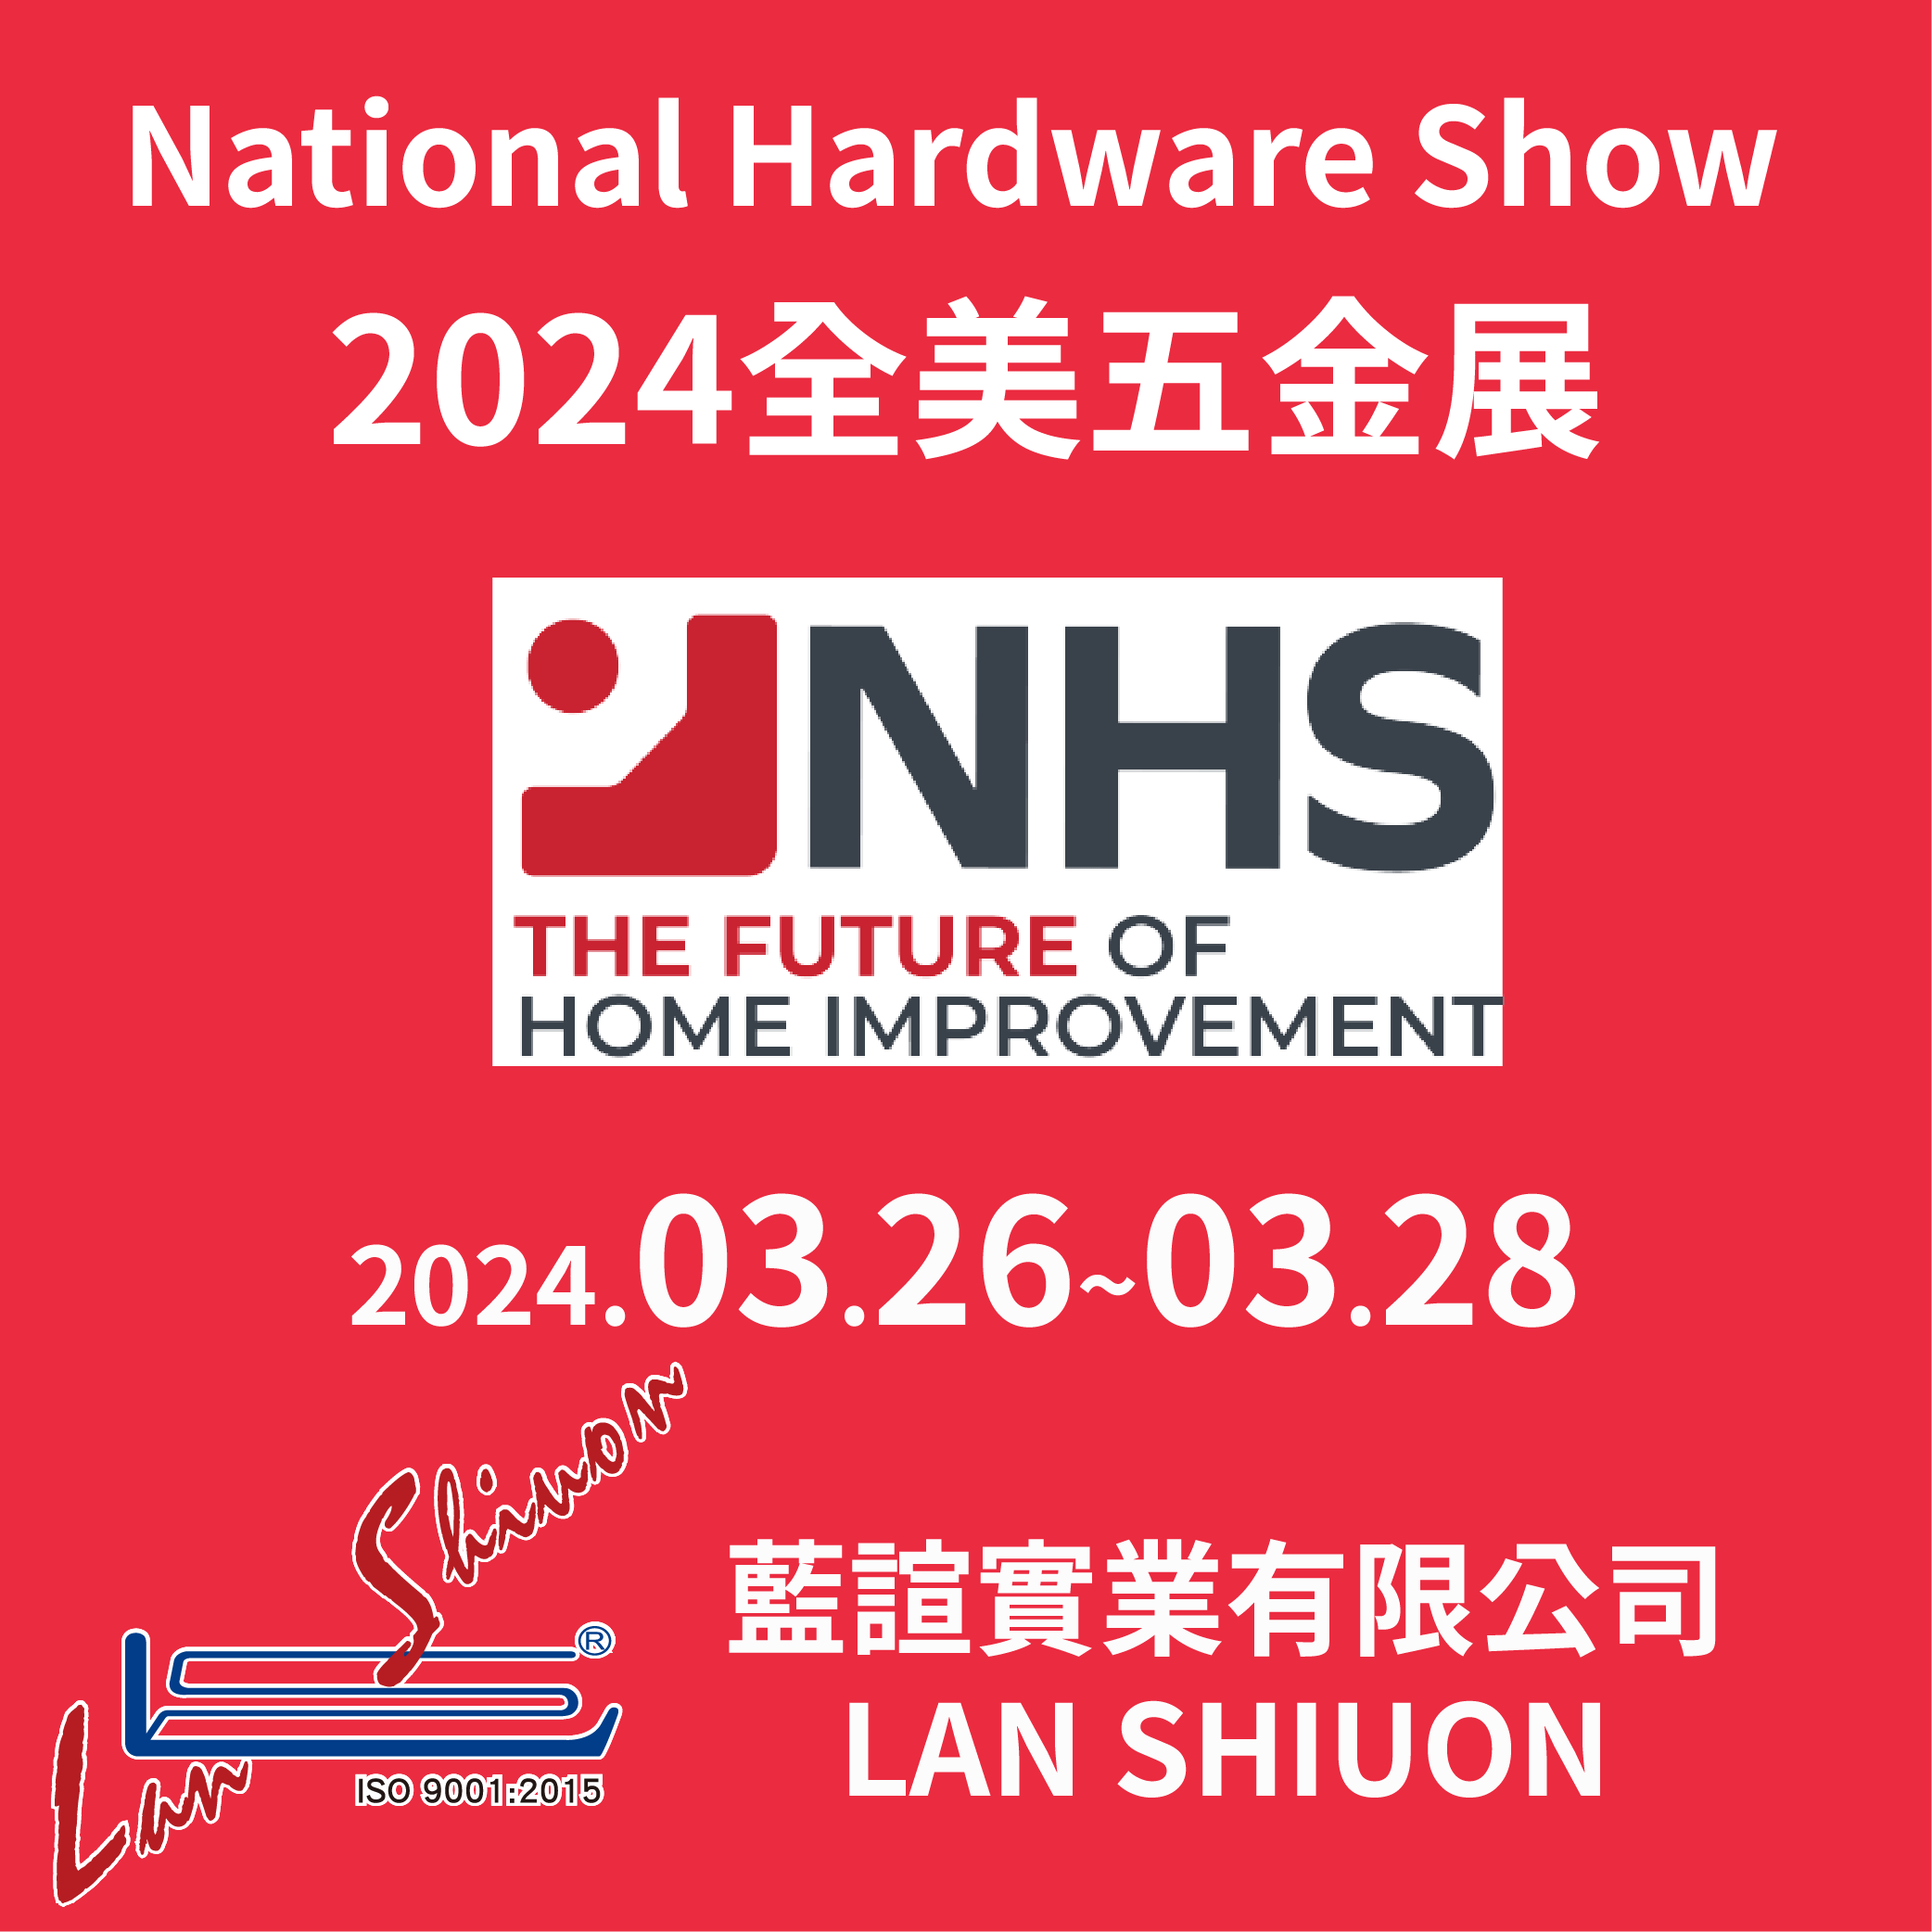 2024 全美五金展 National Hardware Show